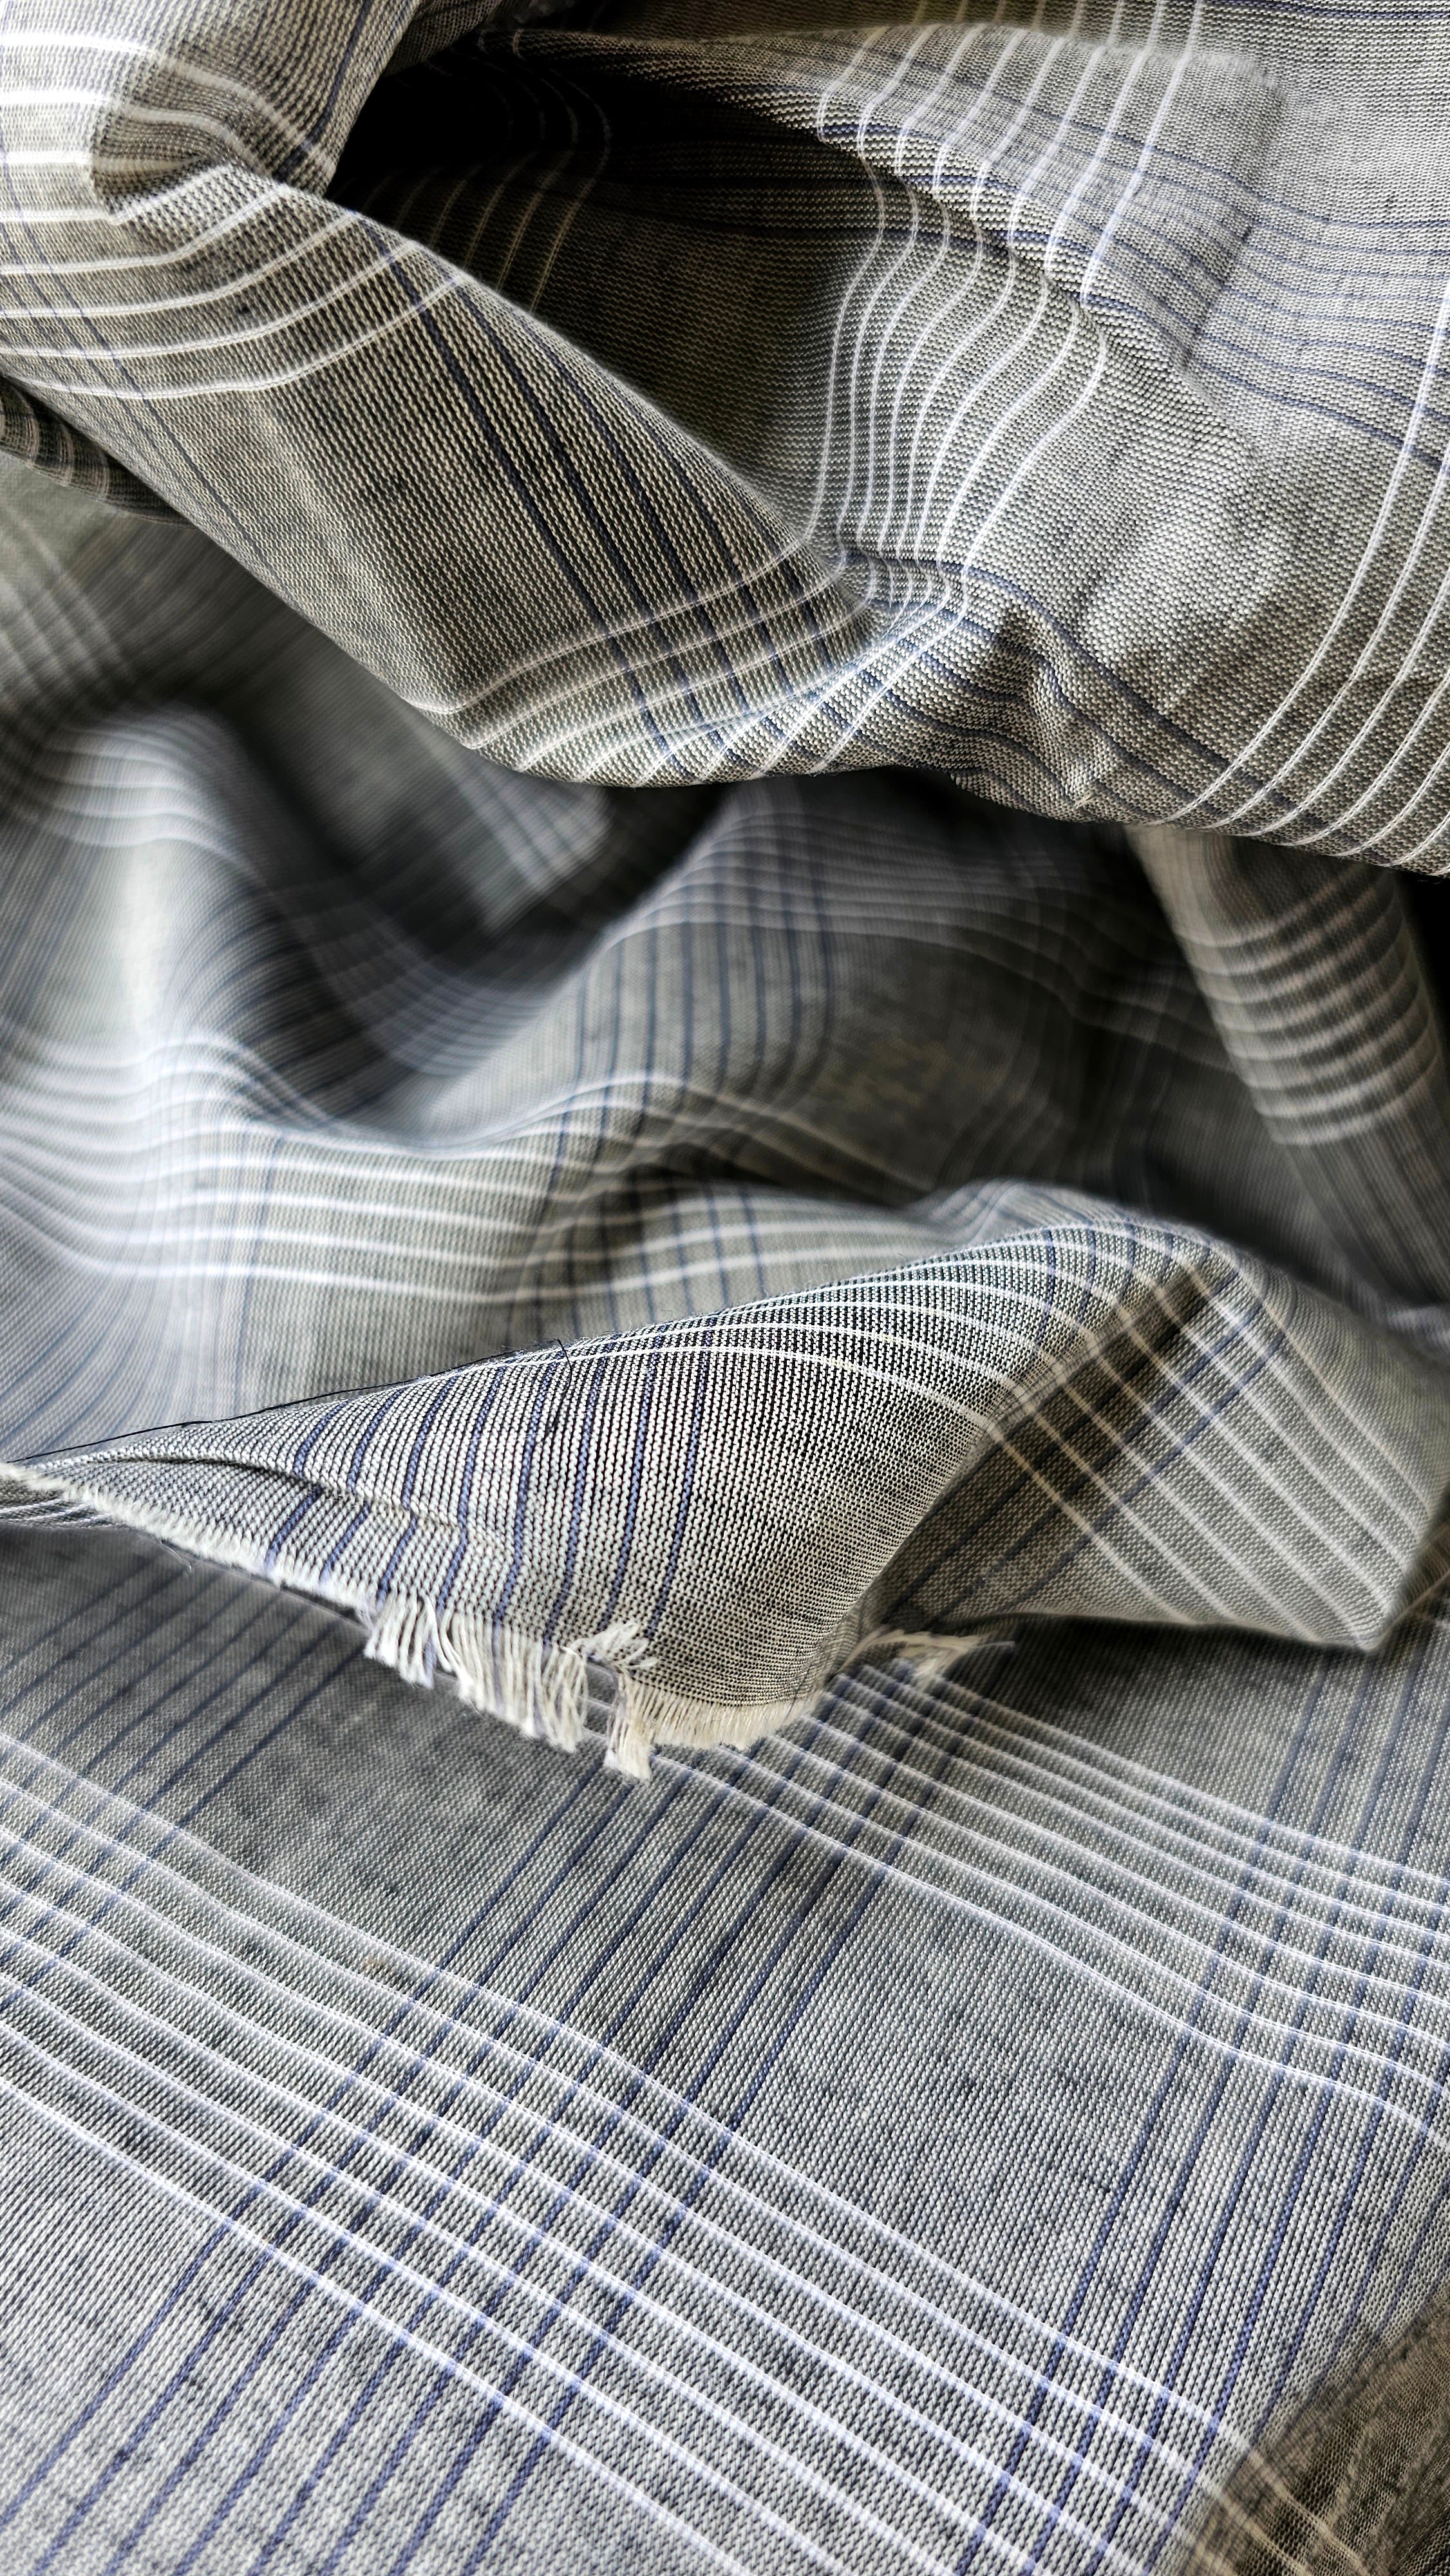 Monochrome fine count Cotton Checks Fabric